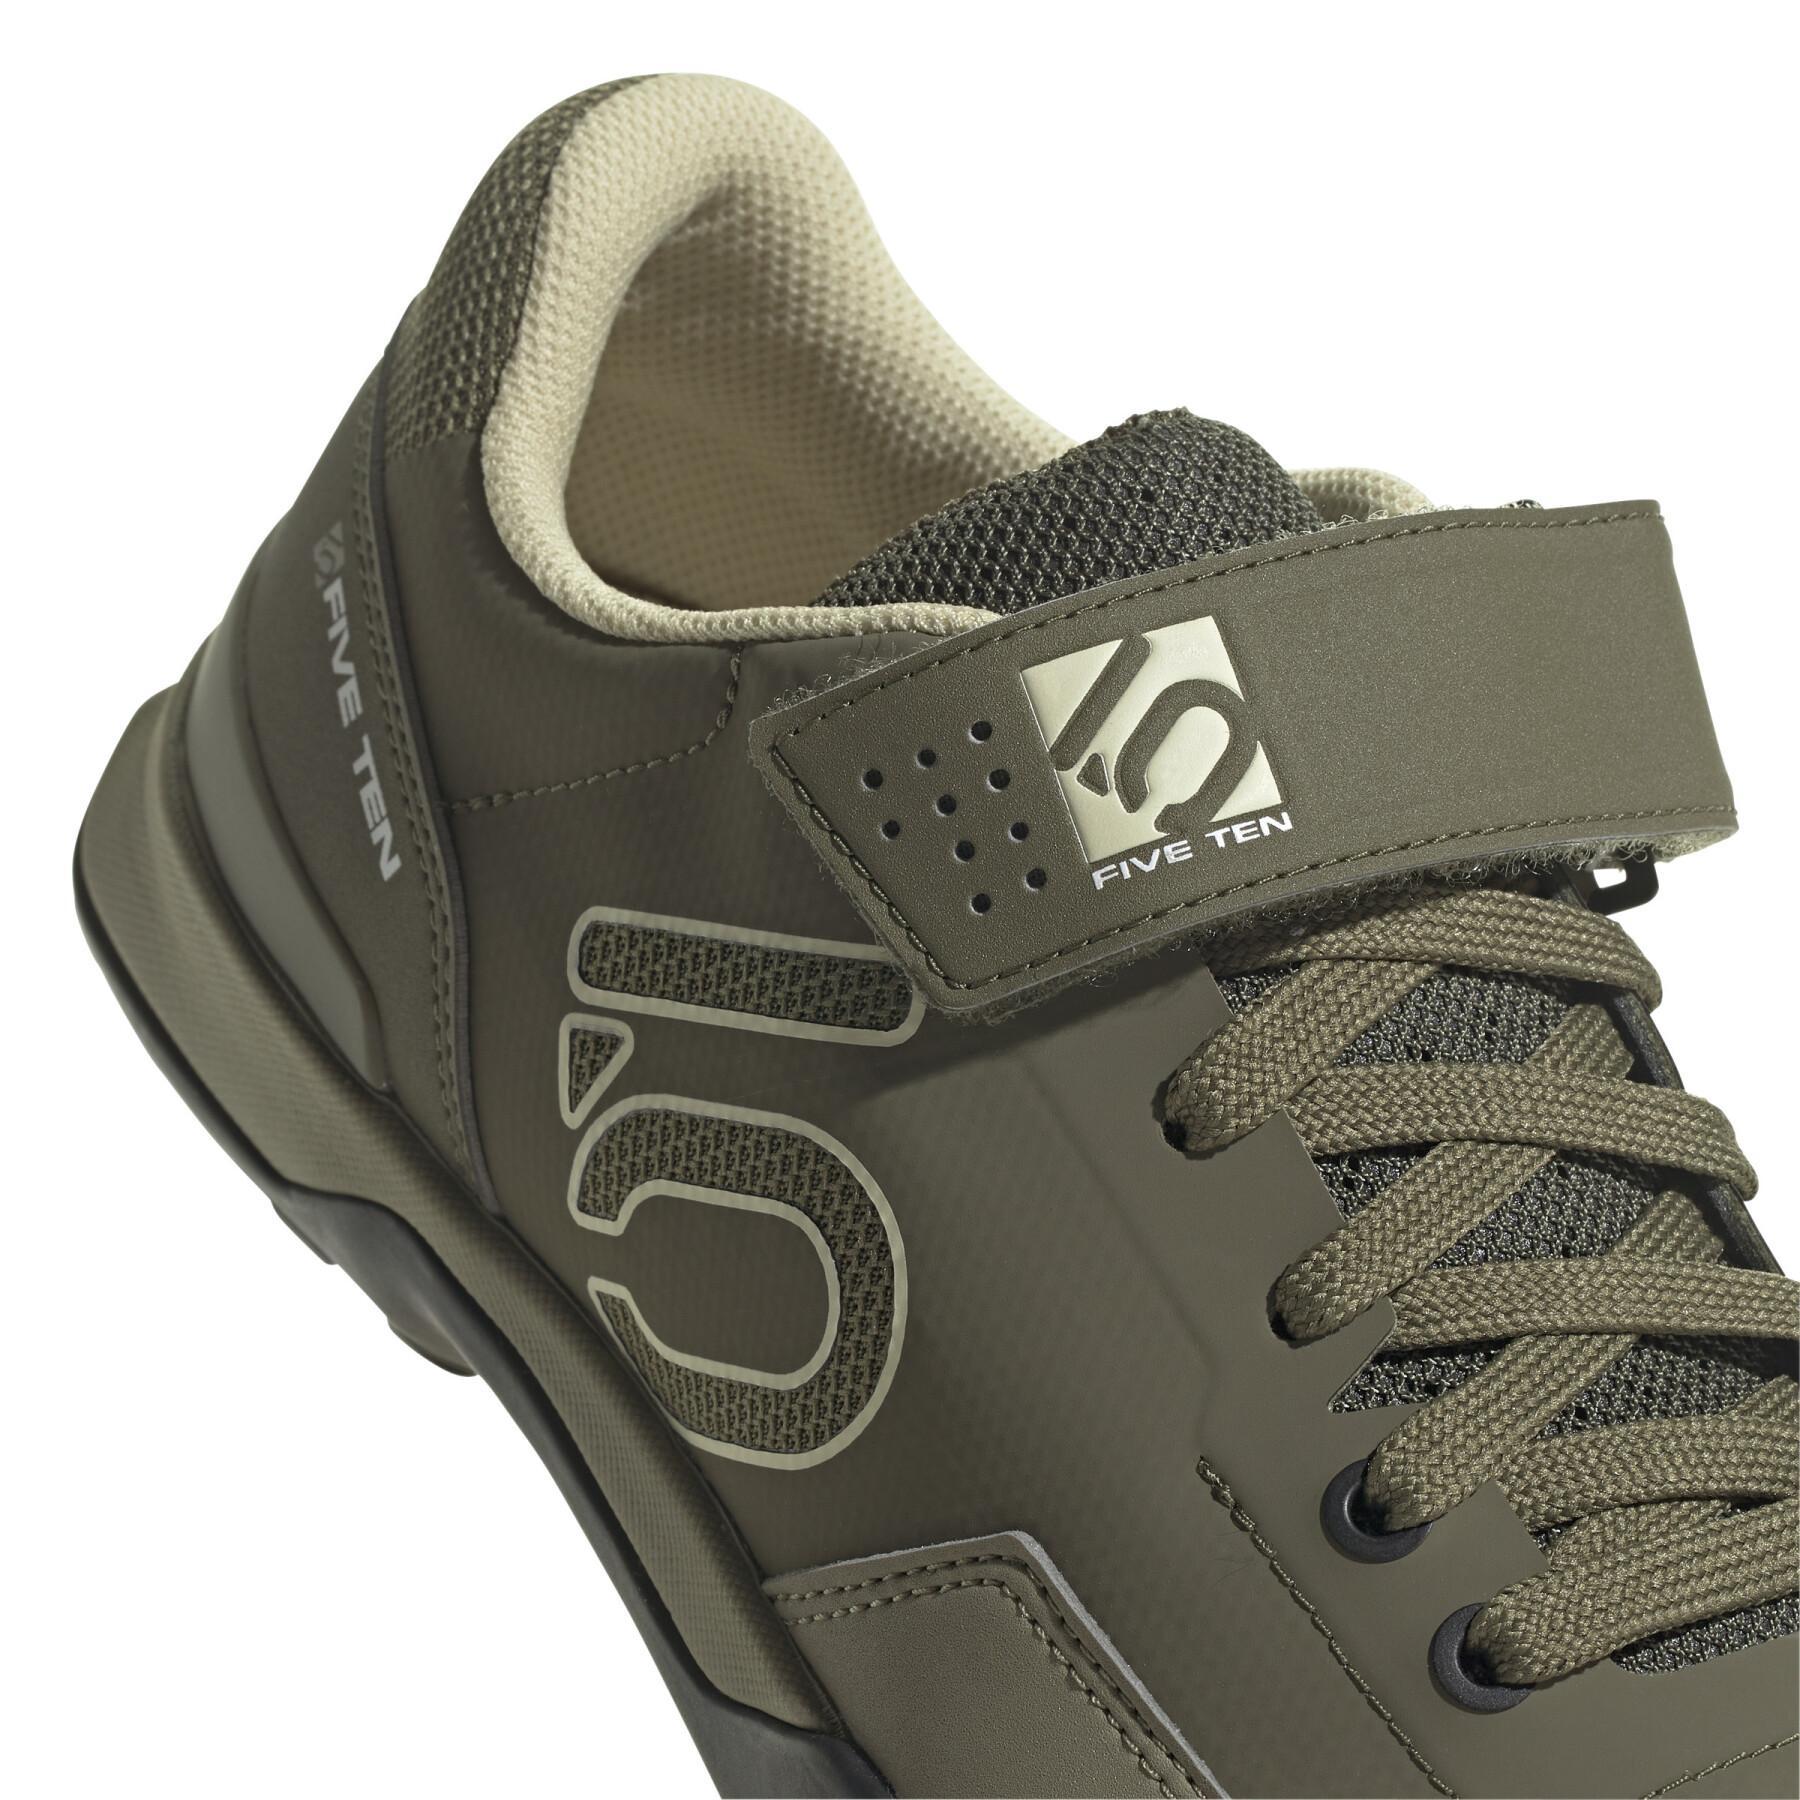 Chaussures VTT adidas 150 Five Ten Mountain Bike Kestrel